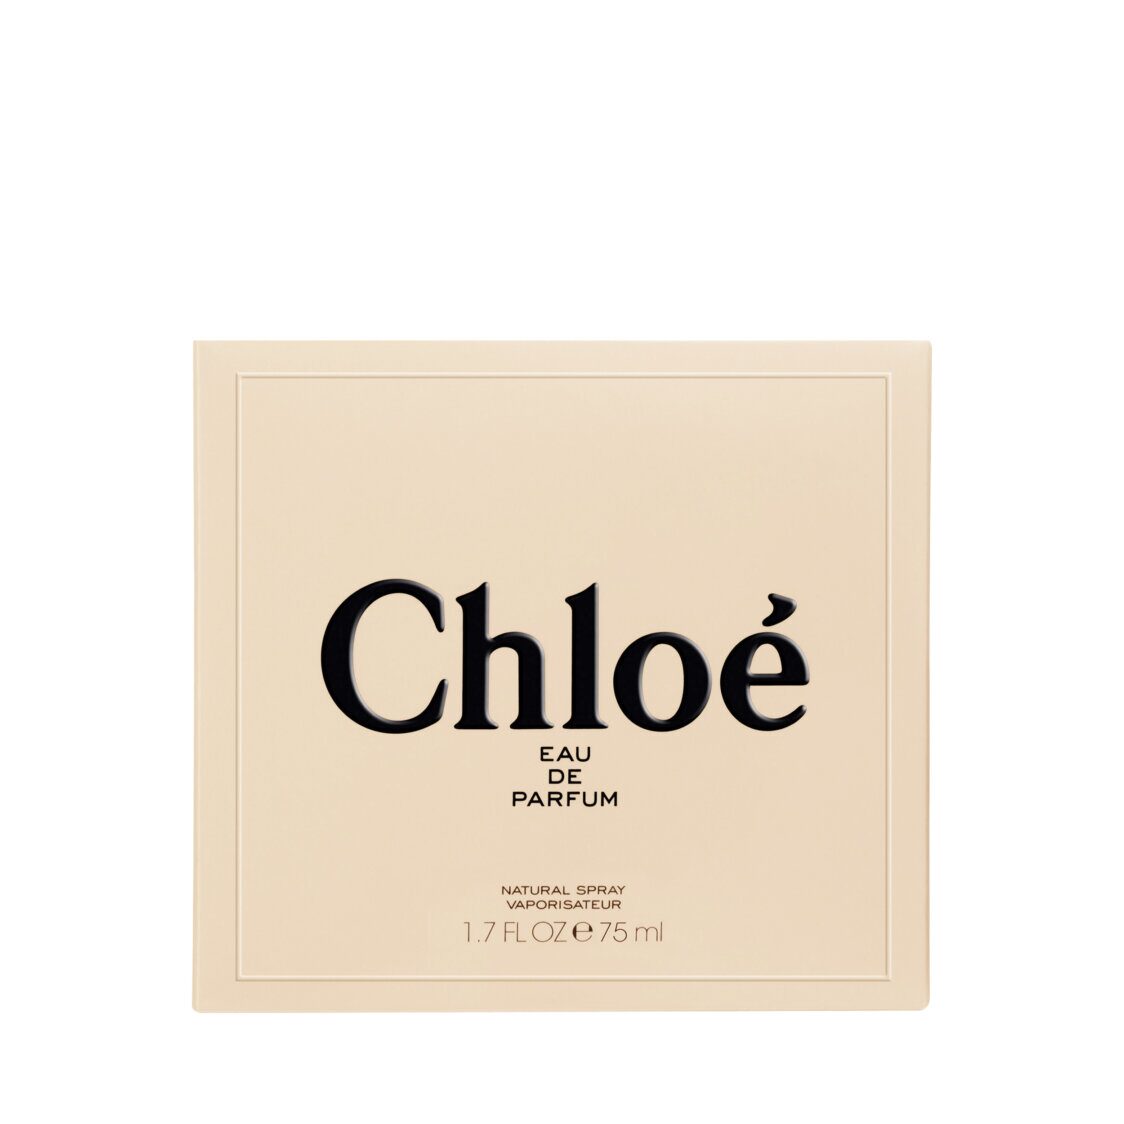 Chloé Signature Eau de Parfum Metro Department Store